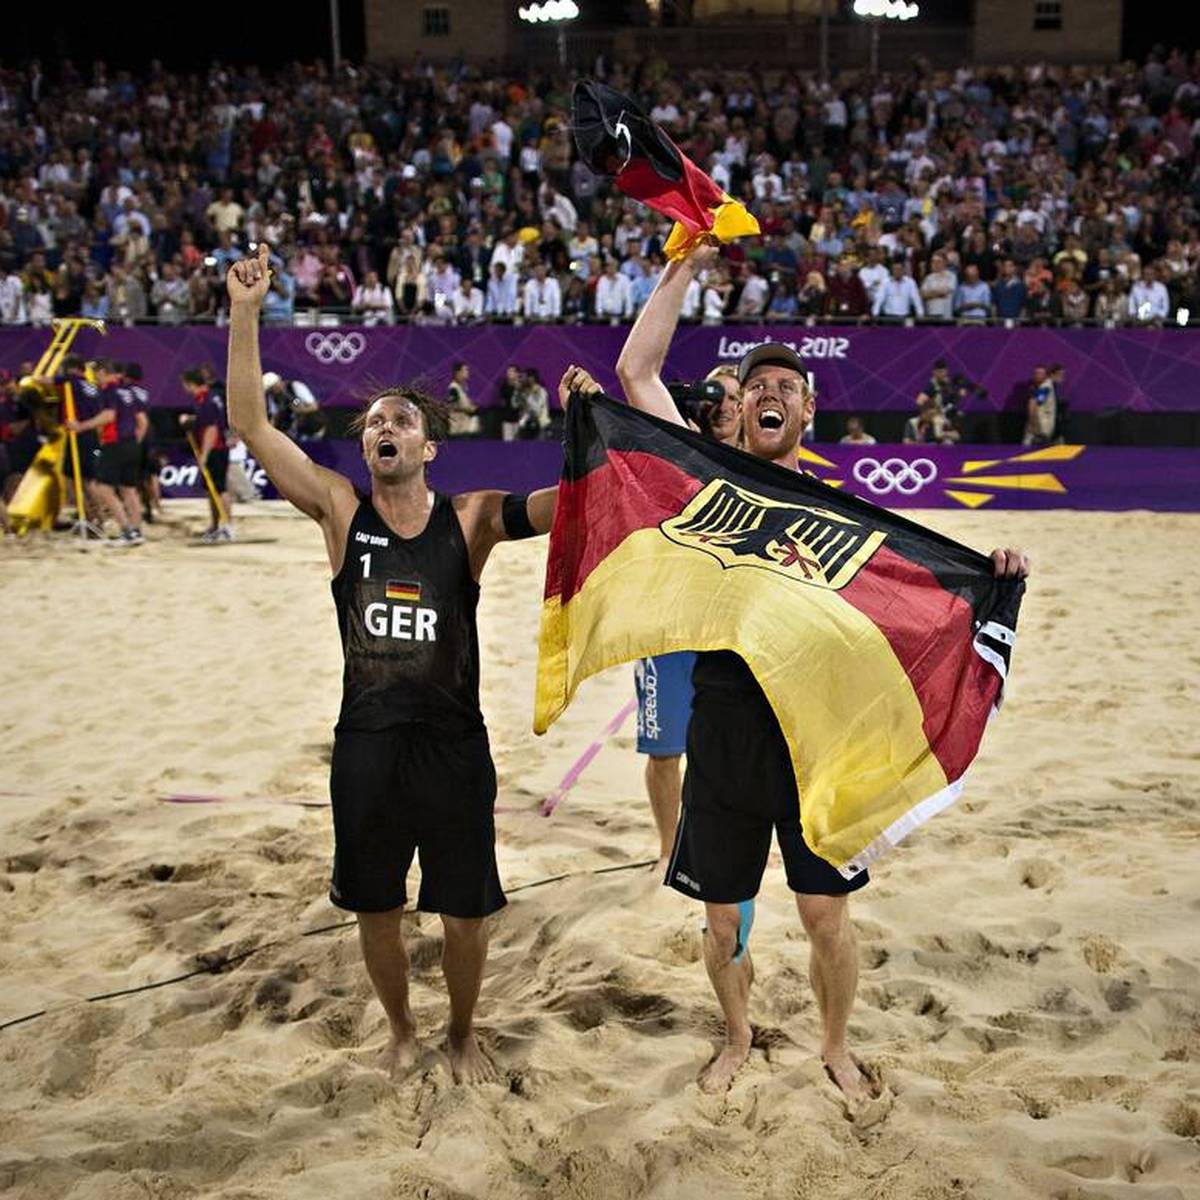 Bei den Olympischen Spielen 2012 in London gehen Julius Brink und Jonas Reckermann als Außenseiter an den Start. Das deutsche Beachvolleyball-Duo spielt sich aber in einen Rausch und feiert einen historischen Erfolg. 